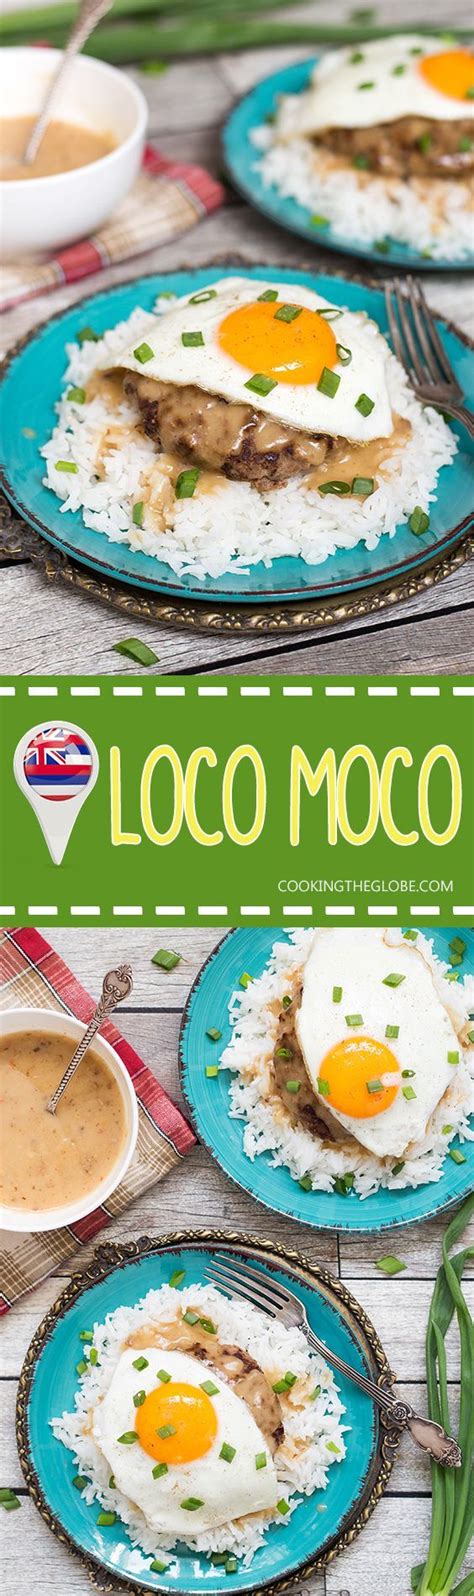 Hawaiian Loco Moco Recipe Cooking The Globe Recipe Cooking